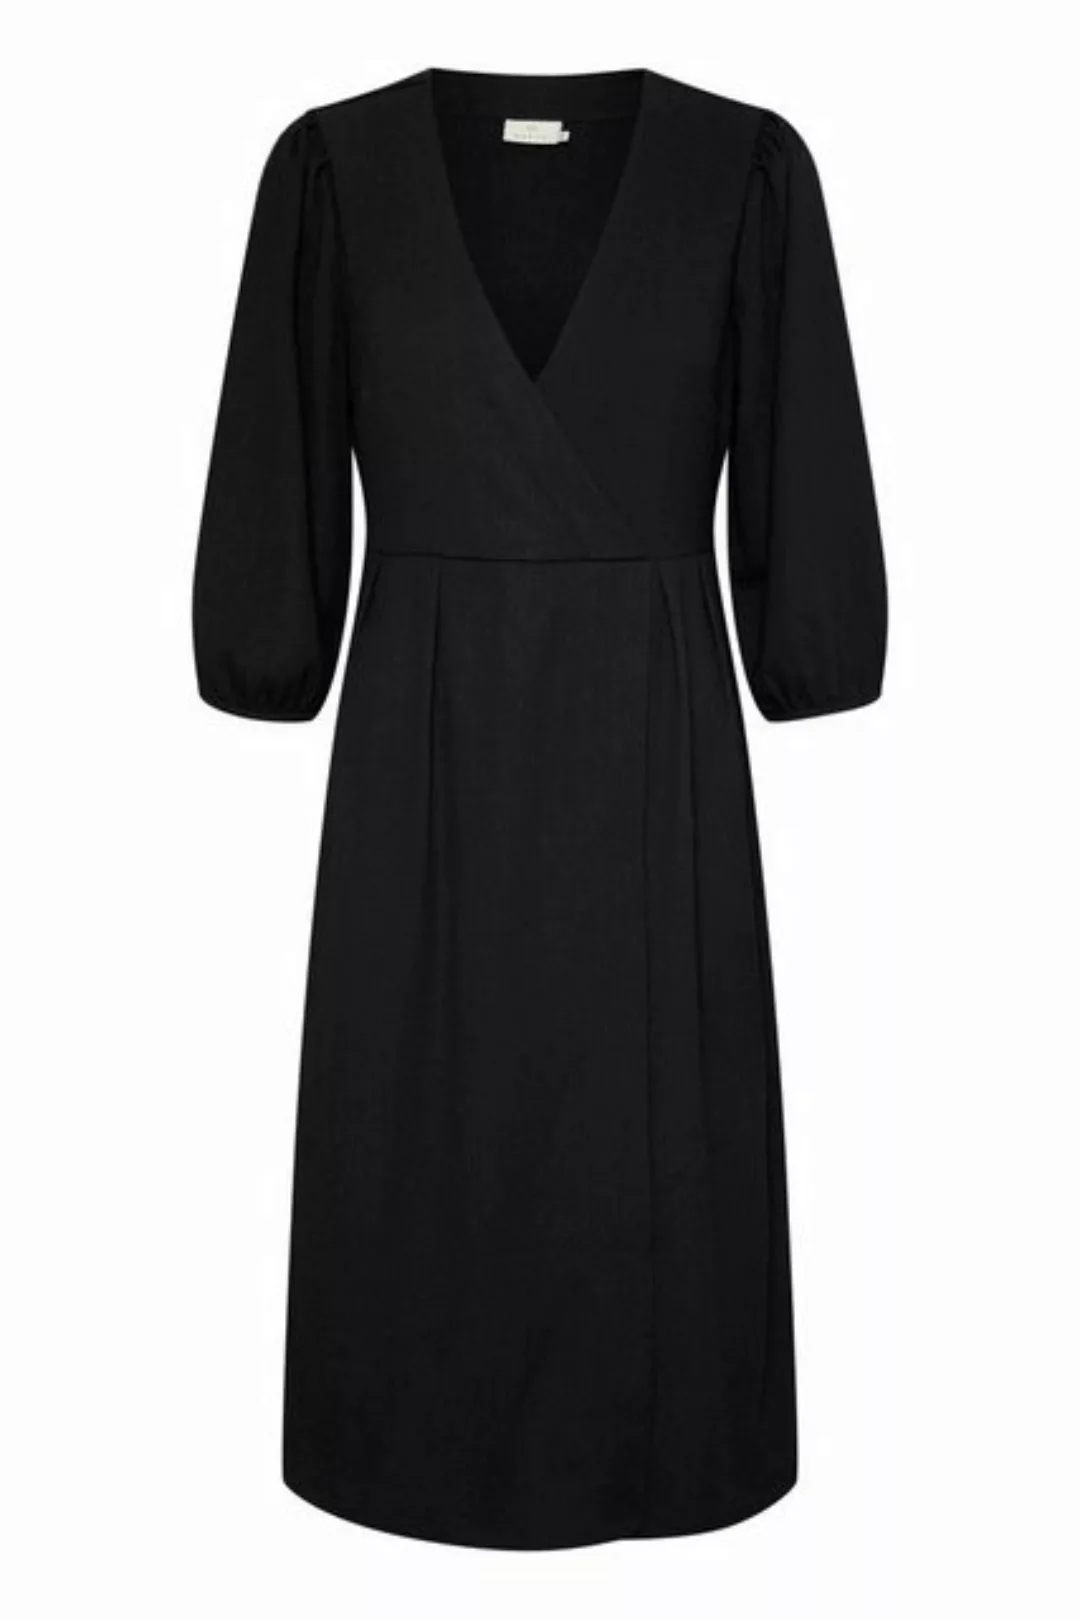 KAFFE Jerseykleid Kleid KAkatrine günstig online kaufen